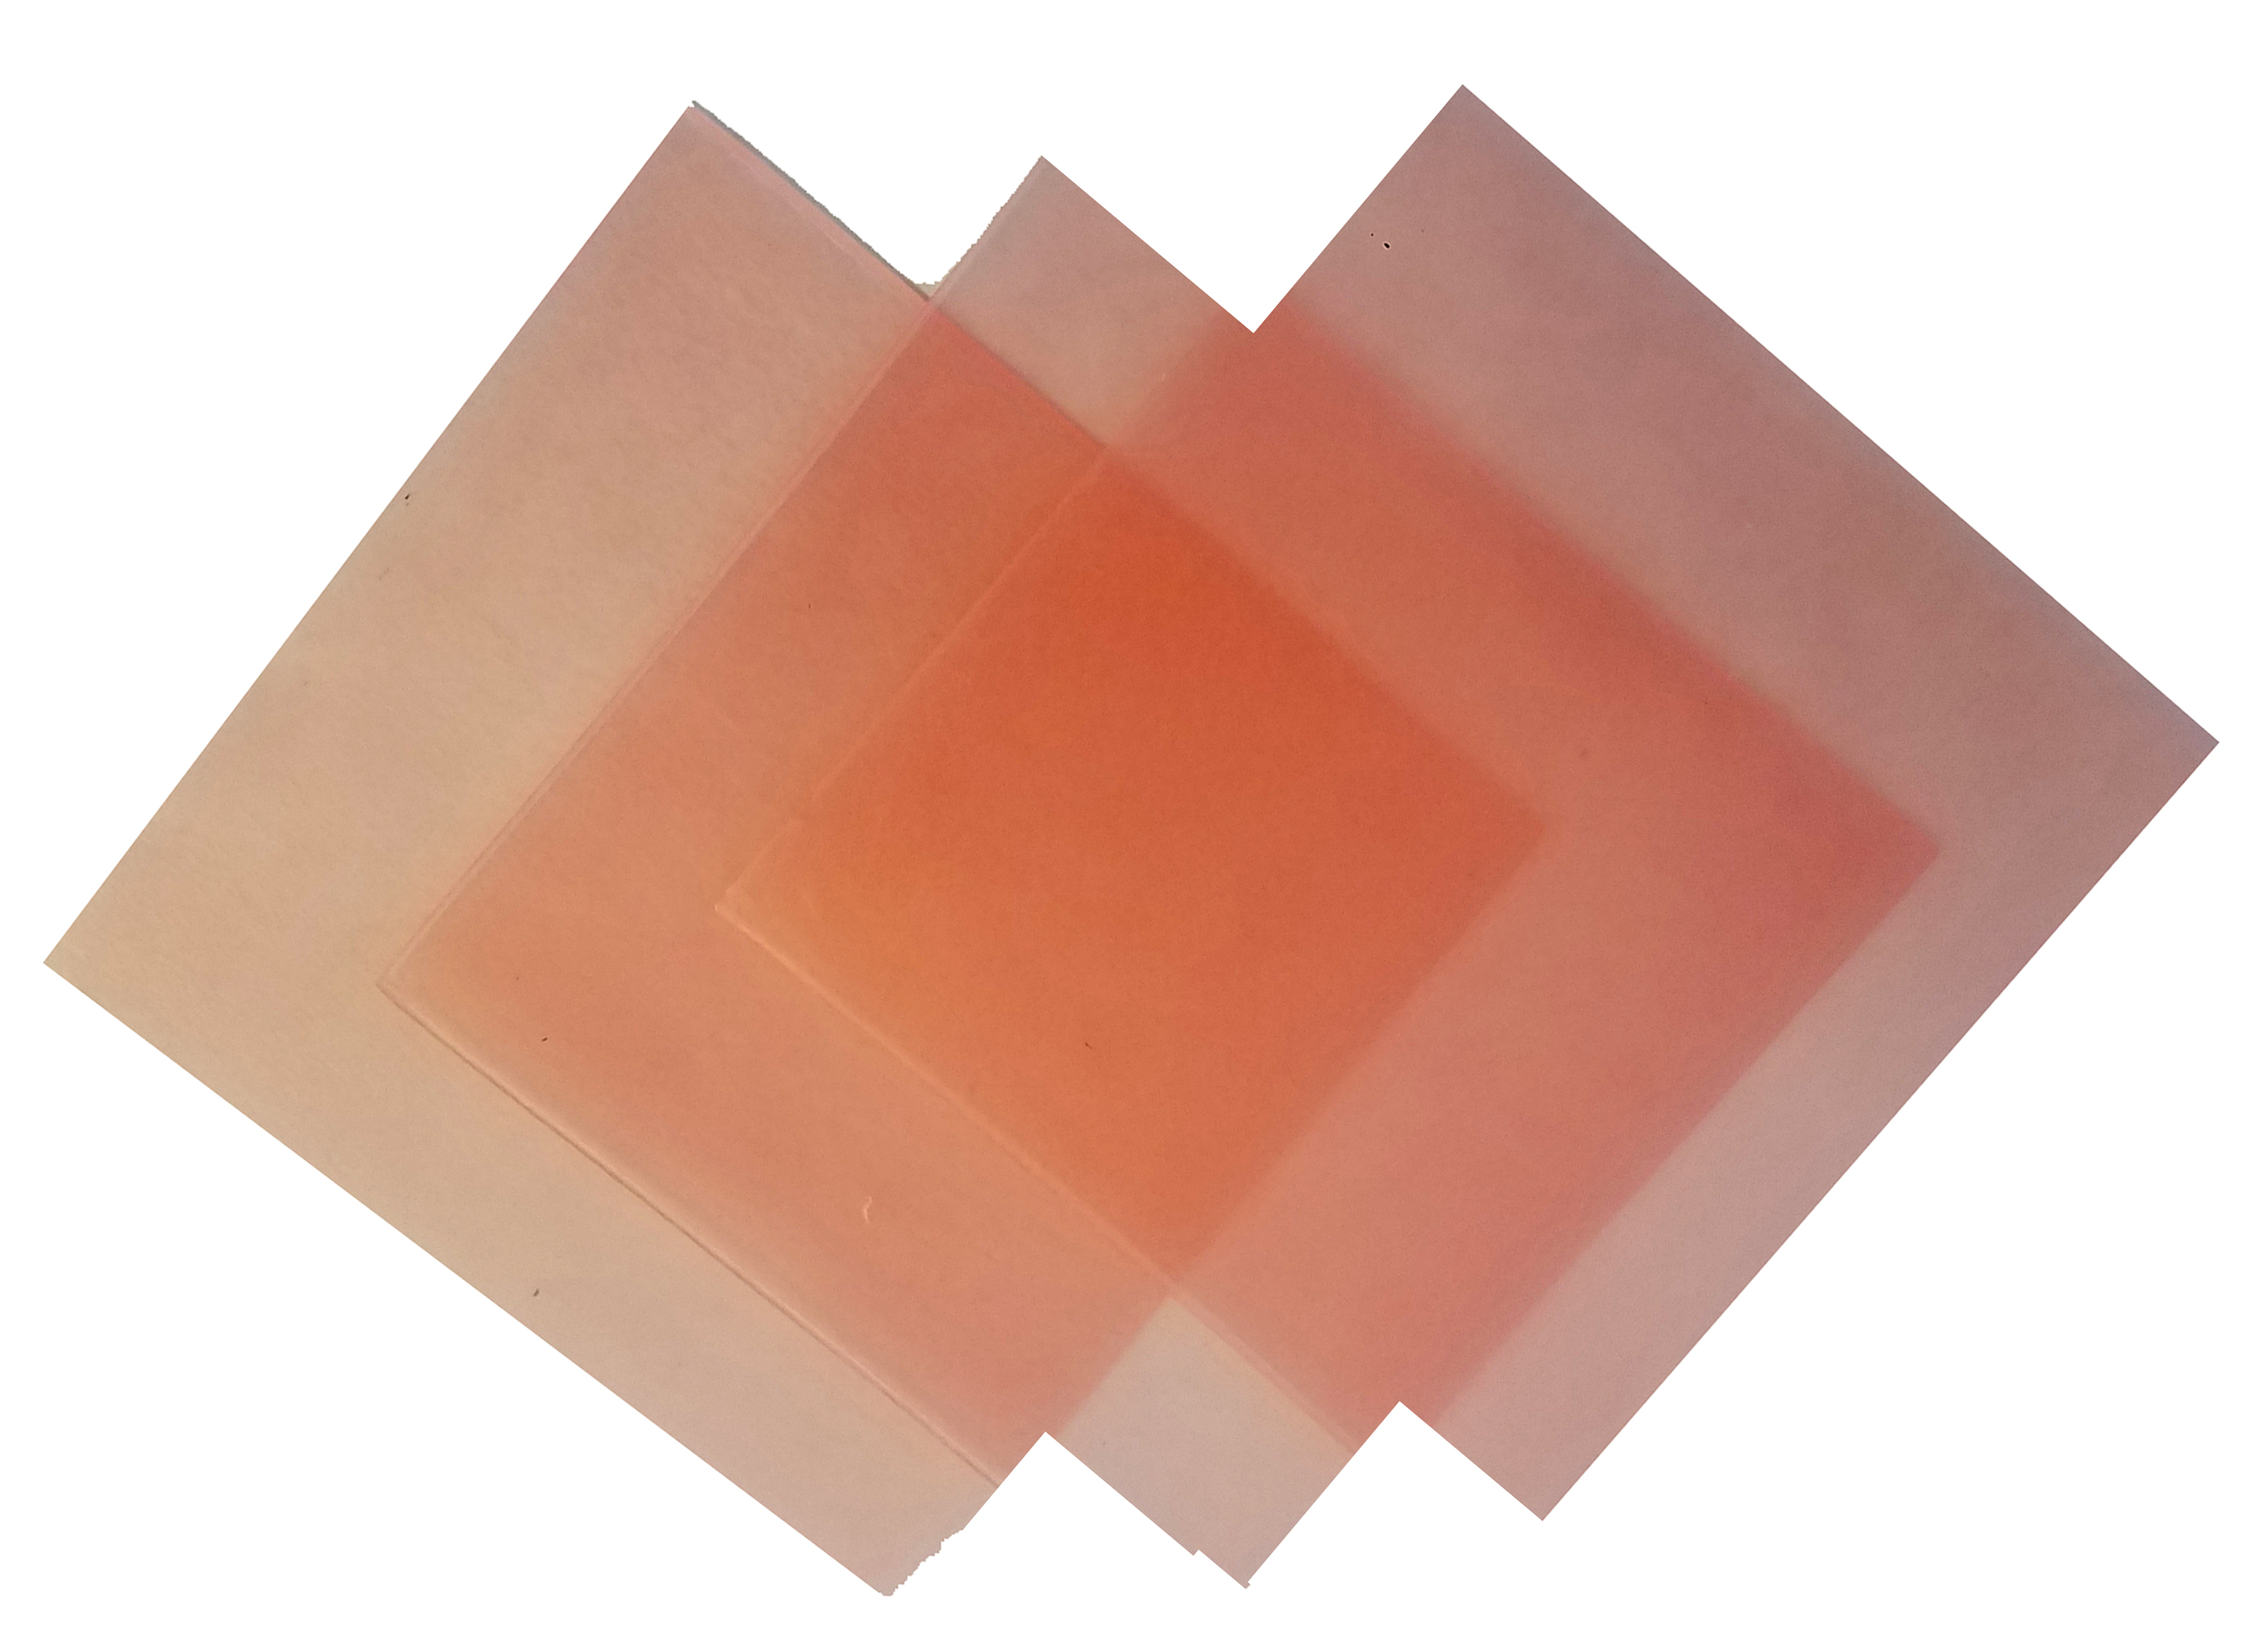 4"x4" sheet wax 22 gauge pink